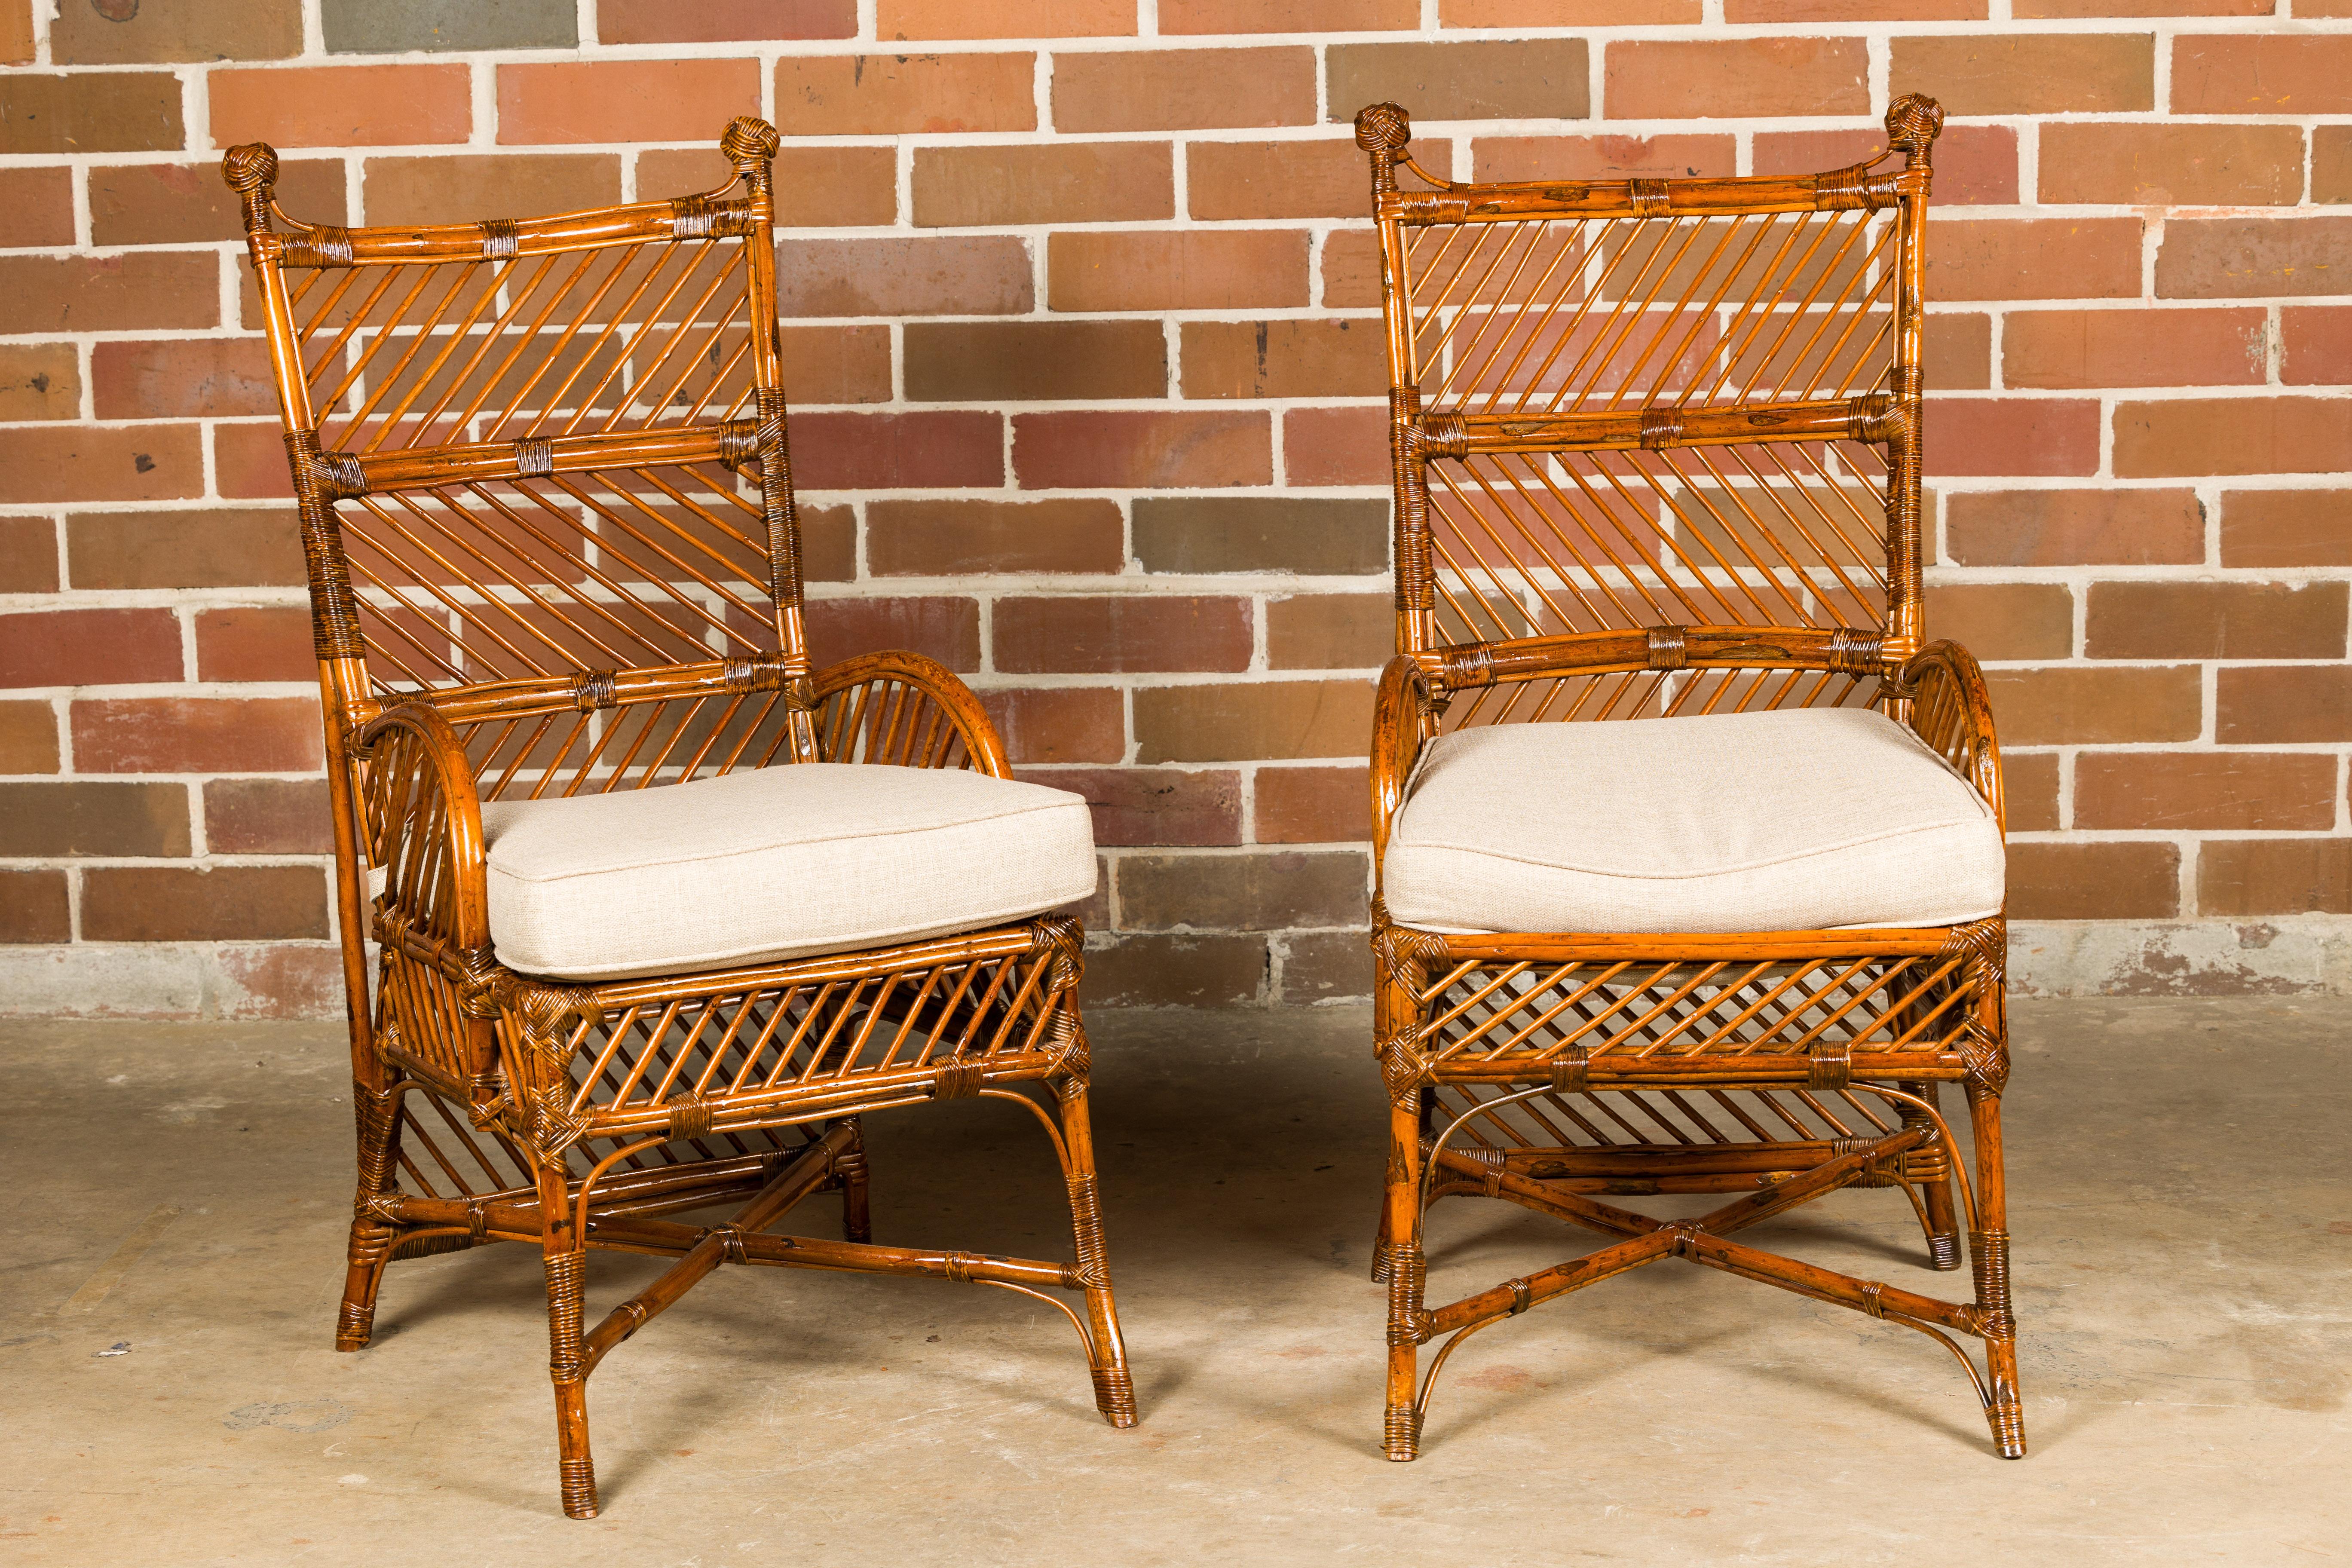 Paire de chaises anglaises en bambou et rotin datant d'environ 1890-1920 avec coussins personnalisés. Ces exquises chaises anglaises en bambou et en rotin, datant de la fin du XIXe siècle et du début du XXe siècle, sont une délicieuse fusion de